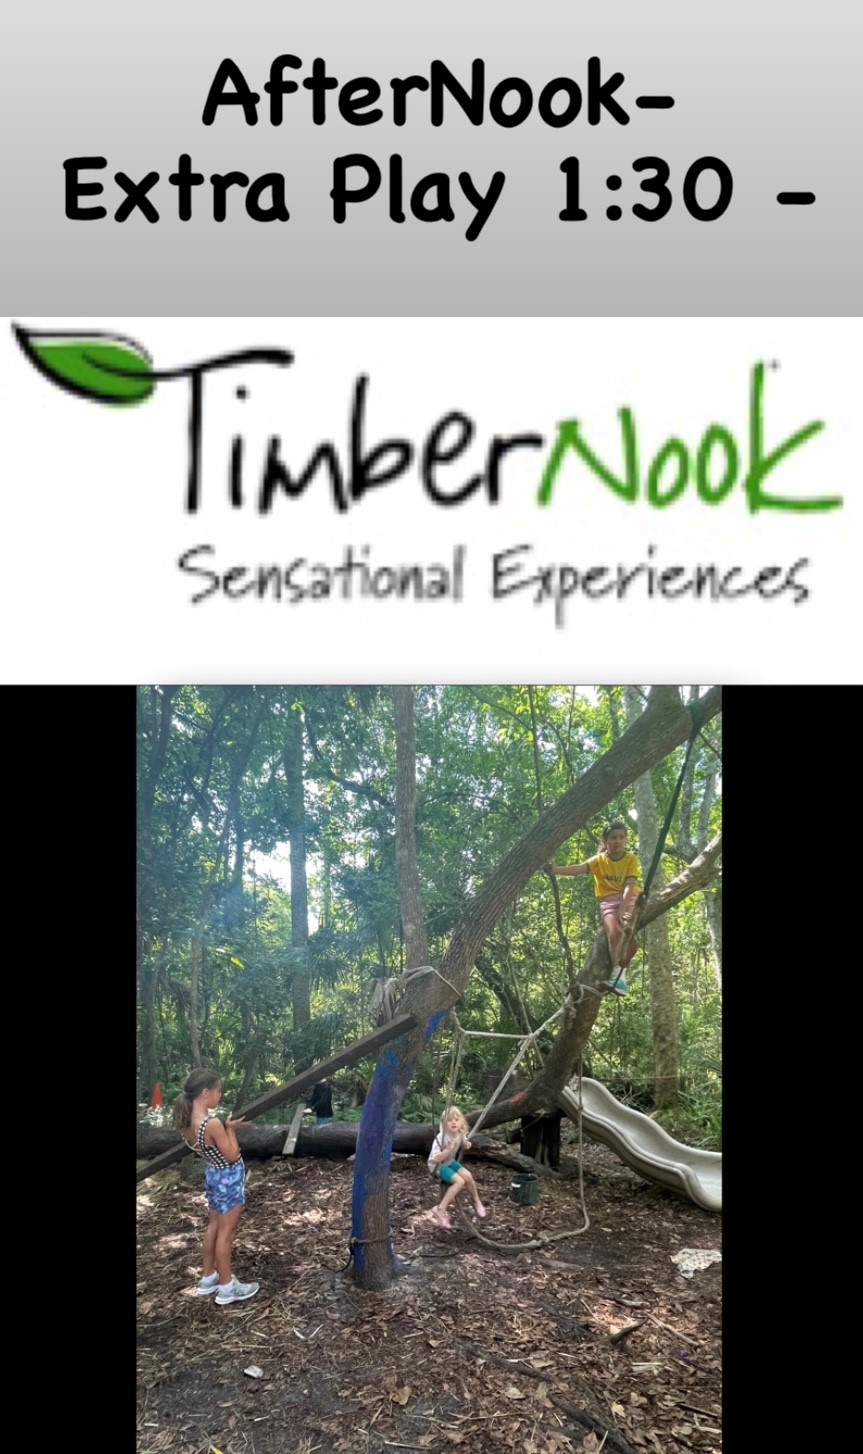 Extreme Art - TimberNook Northeast Florida